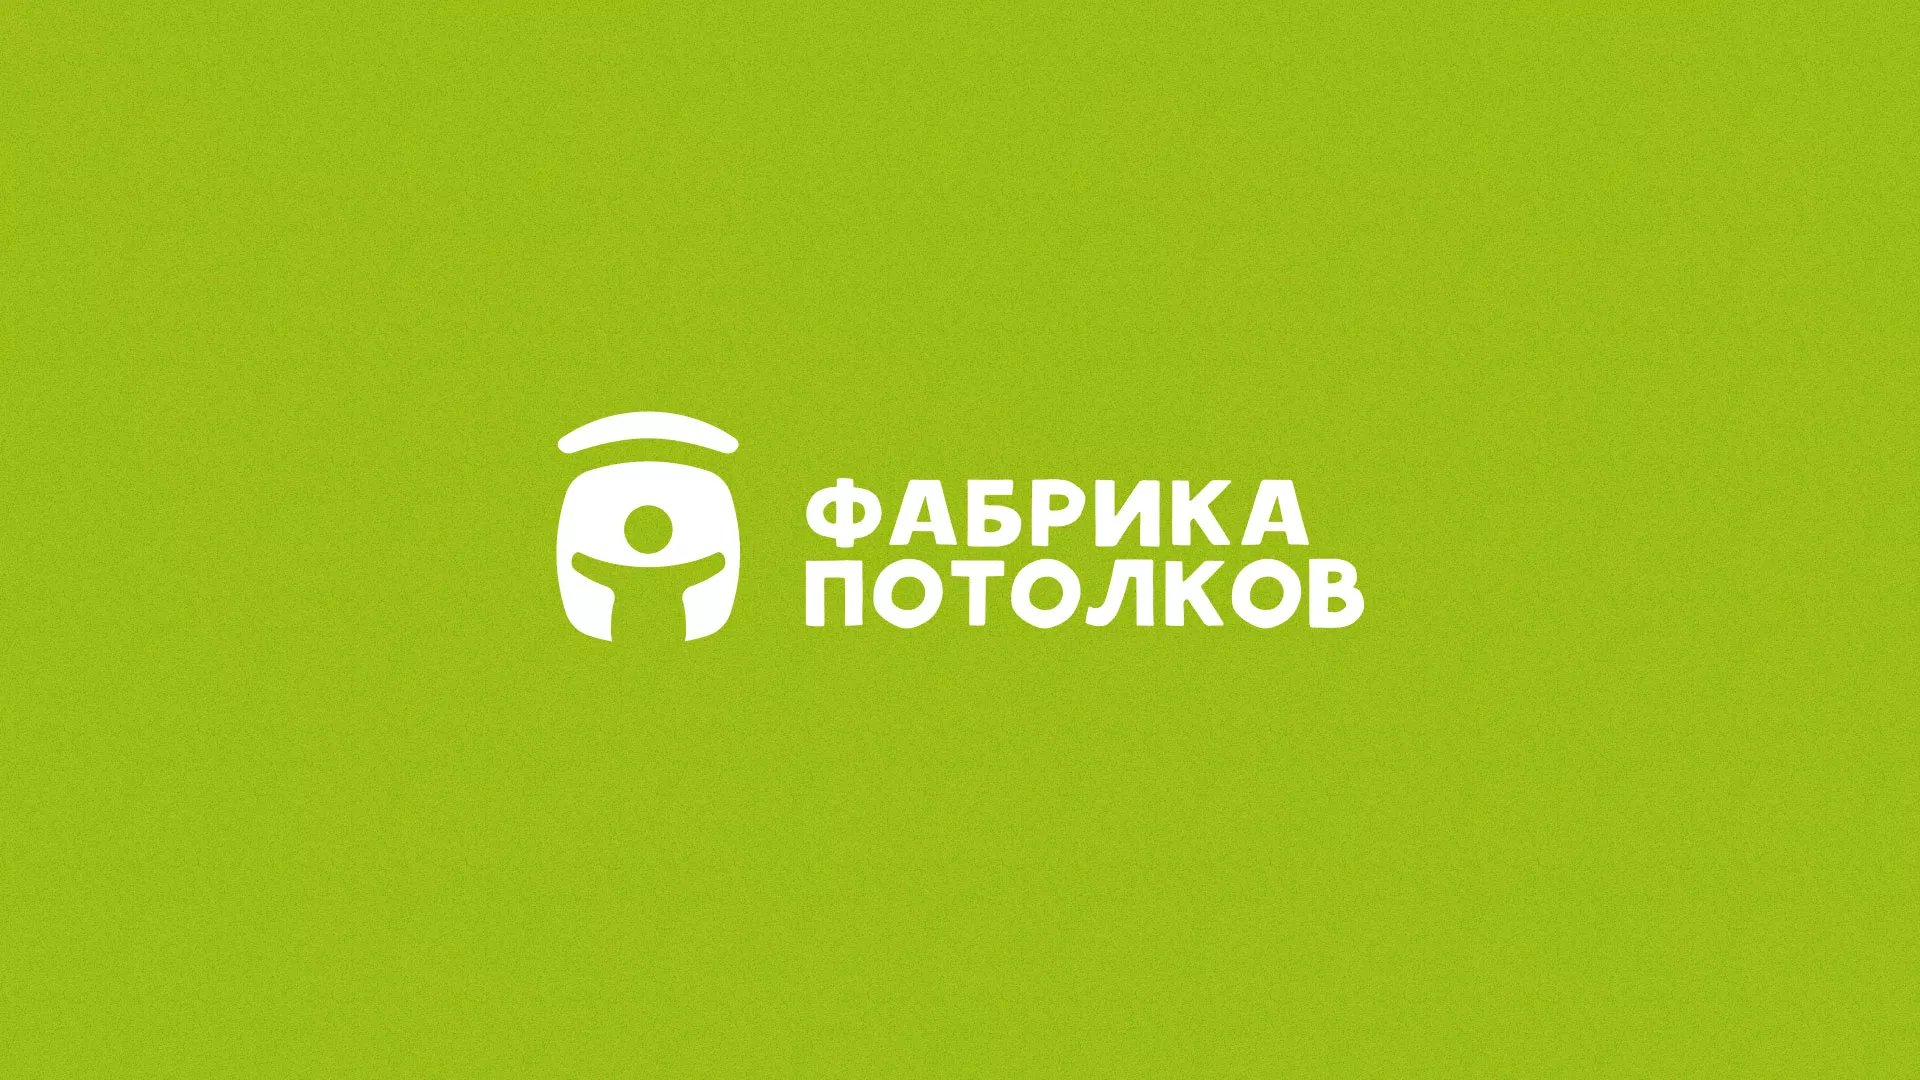 Разработка логотипа для производства натяжных потолков в Александровске